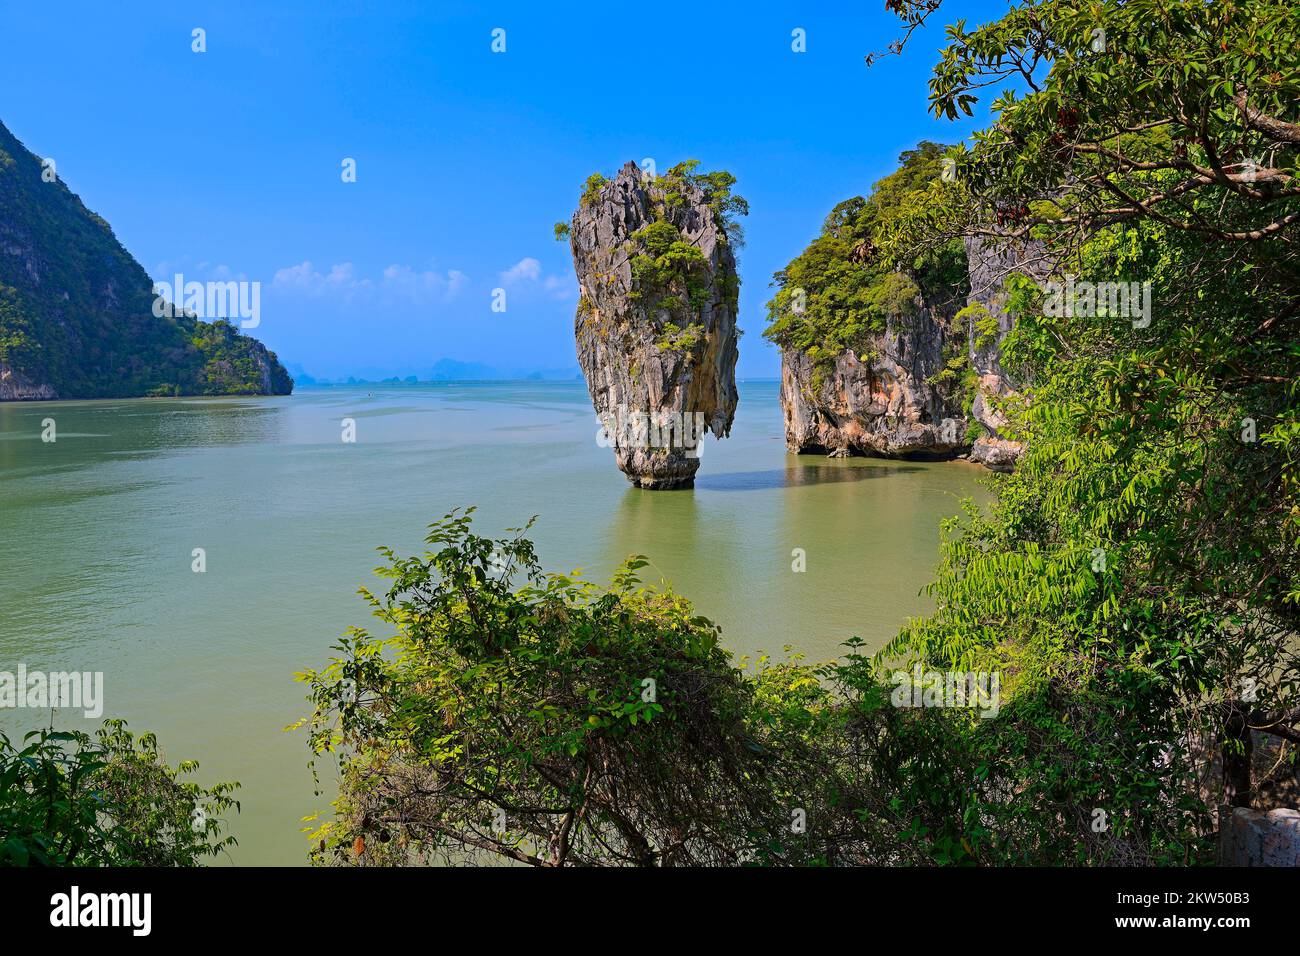 Impresionante formación rocosa en la isla Khao Phing Kan, también en la isla James Bond, Tailandia, Asia Foto de stock